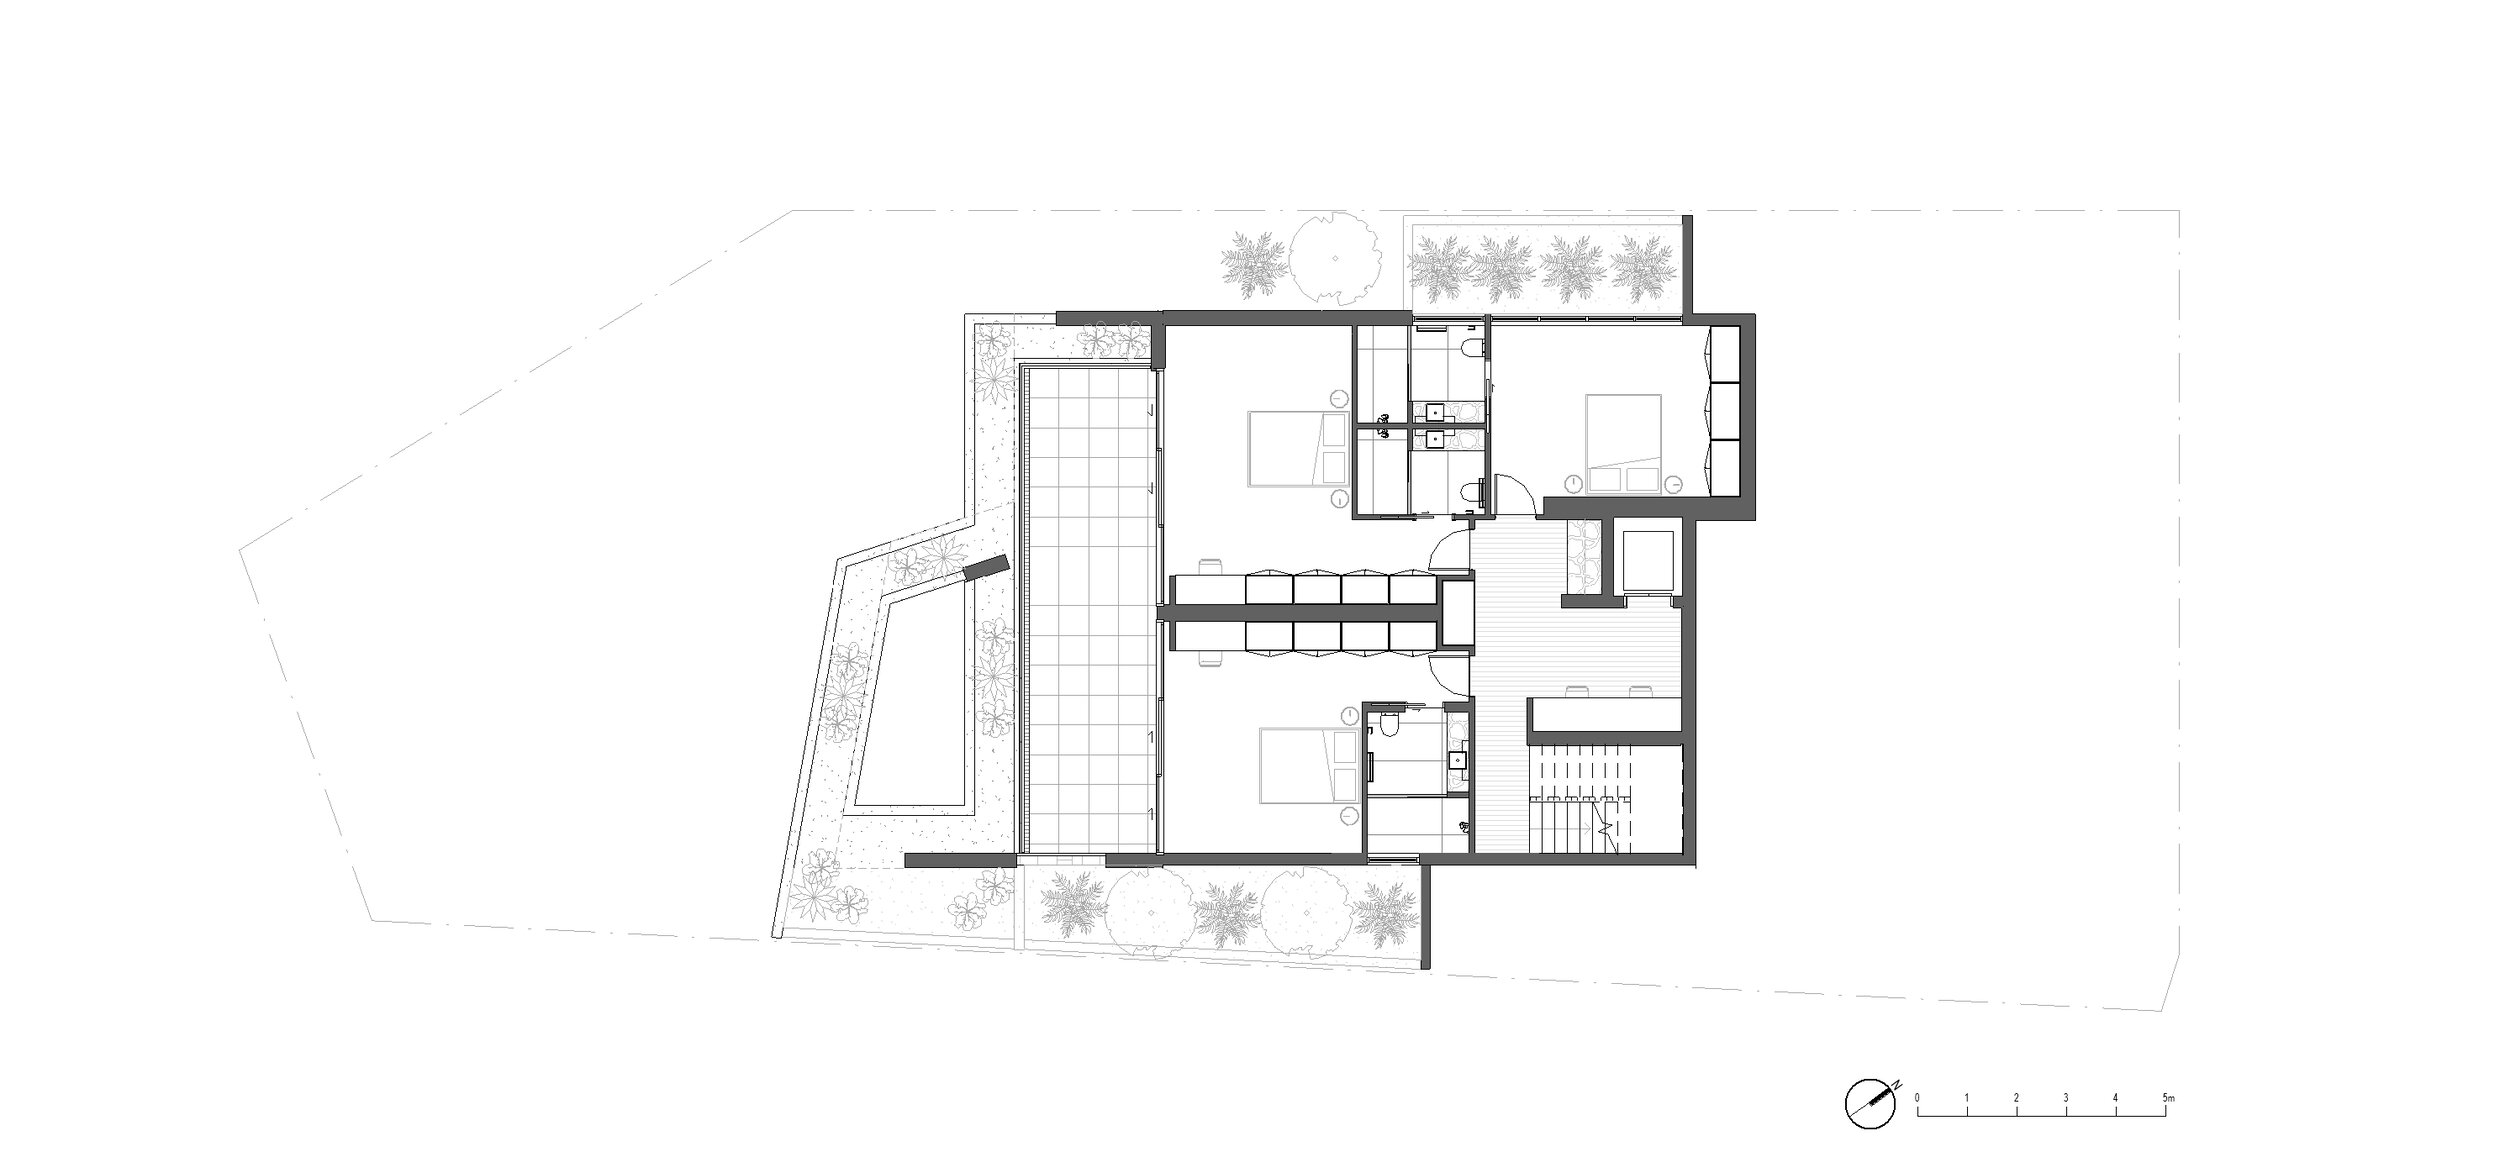 1 - Floor Plan - MARKETING - L2.jpg